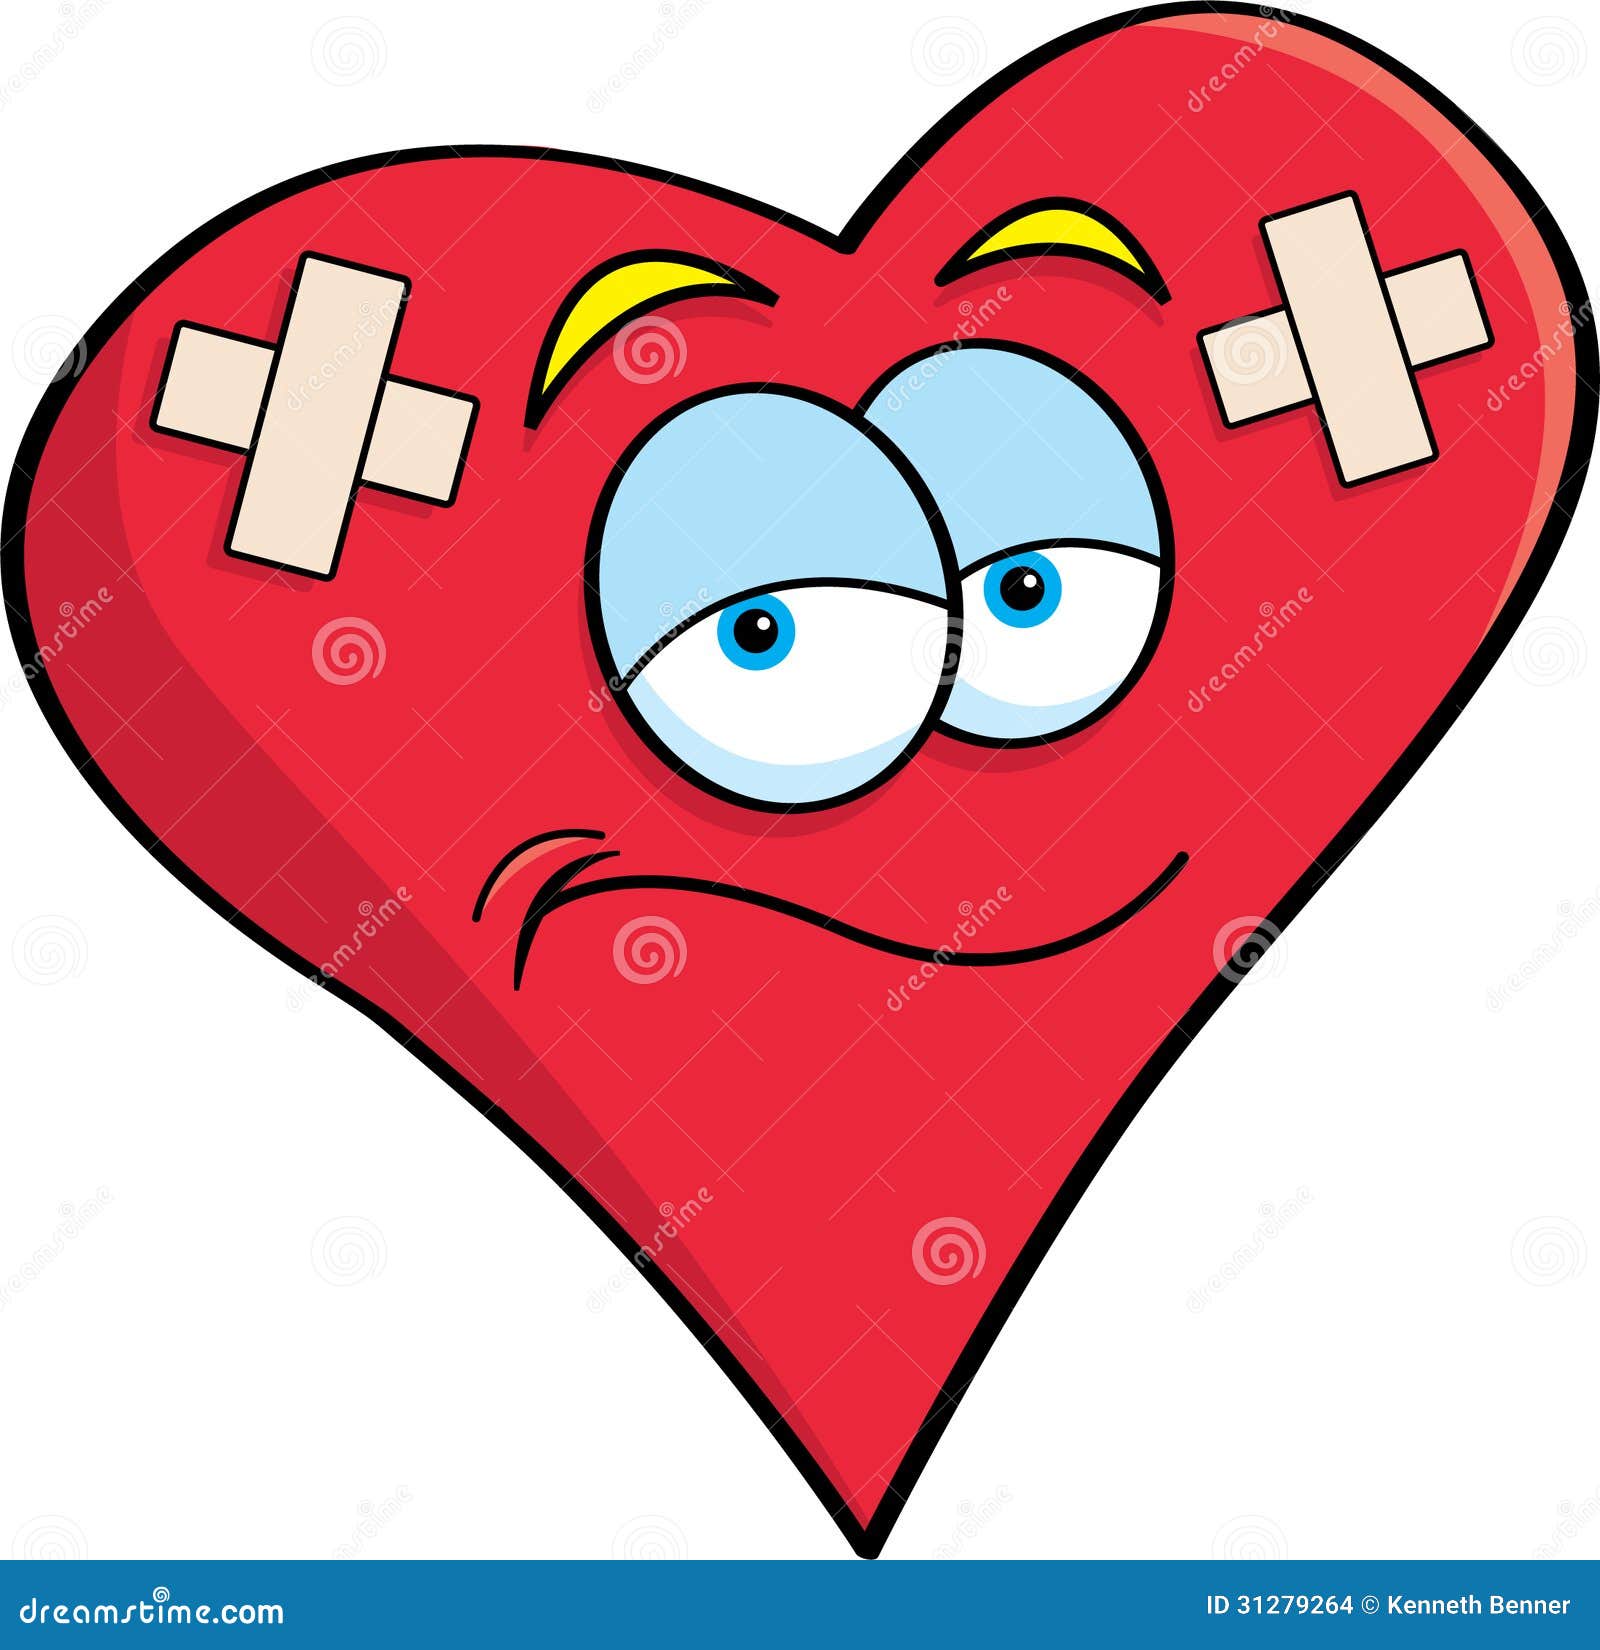 cartoon-bandaged-heart-illustration-bandages-31279264.jpg